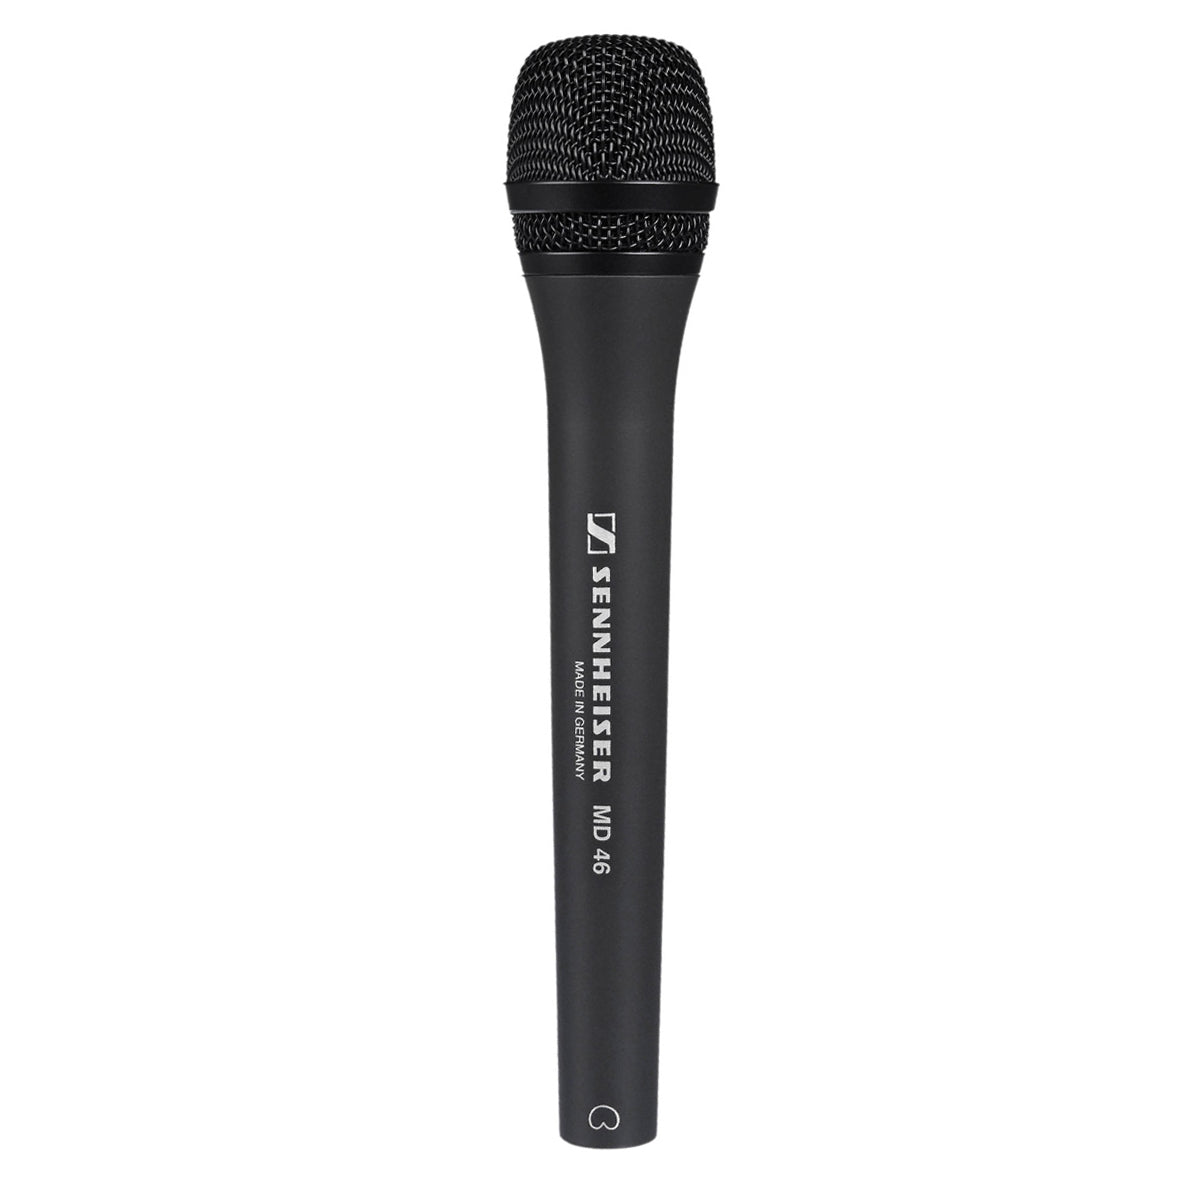 Sennheiser MD 46 Dynamic Cardioid Handheld Microphone, Low Wind/Handling Noise